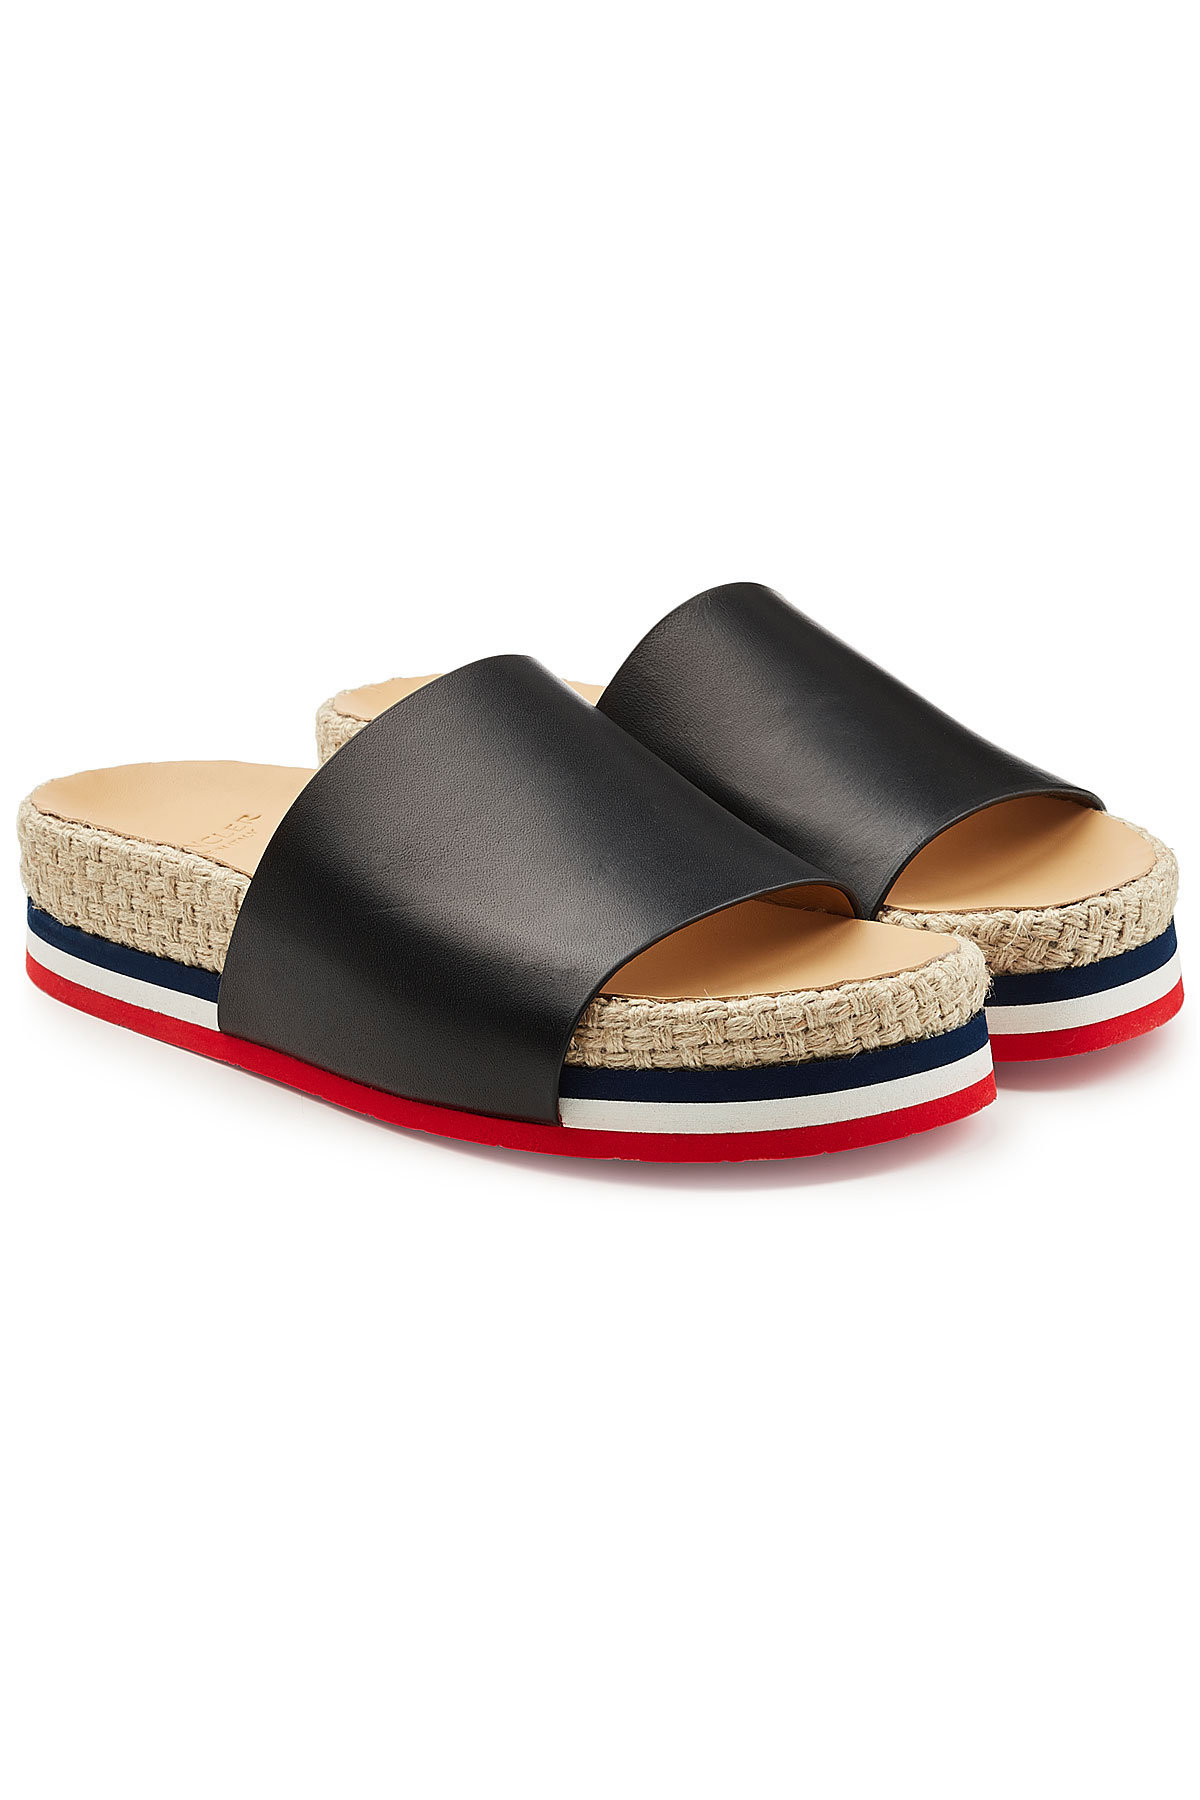 Moncler - Evelyne Leather Sandals